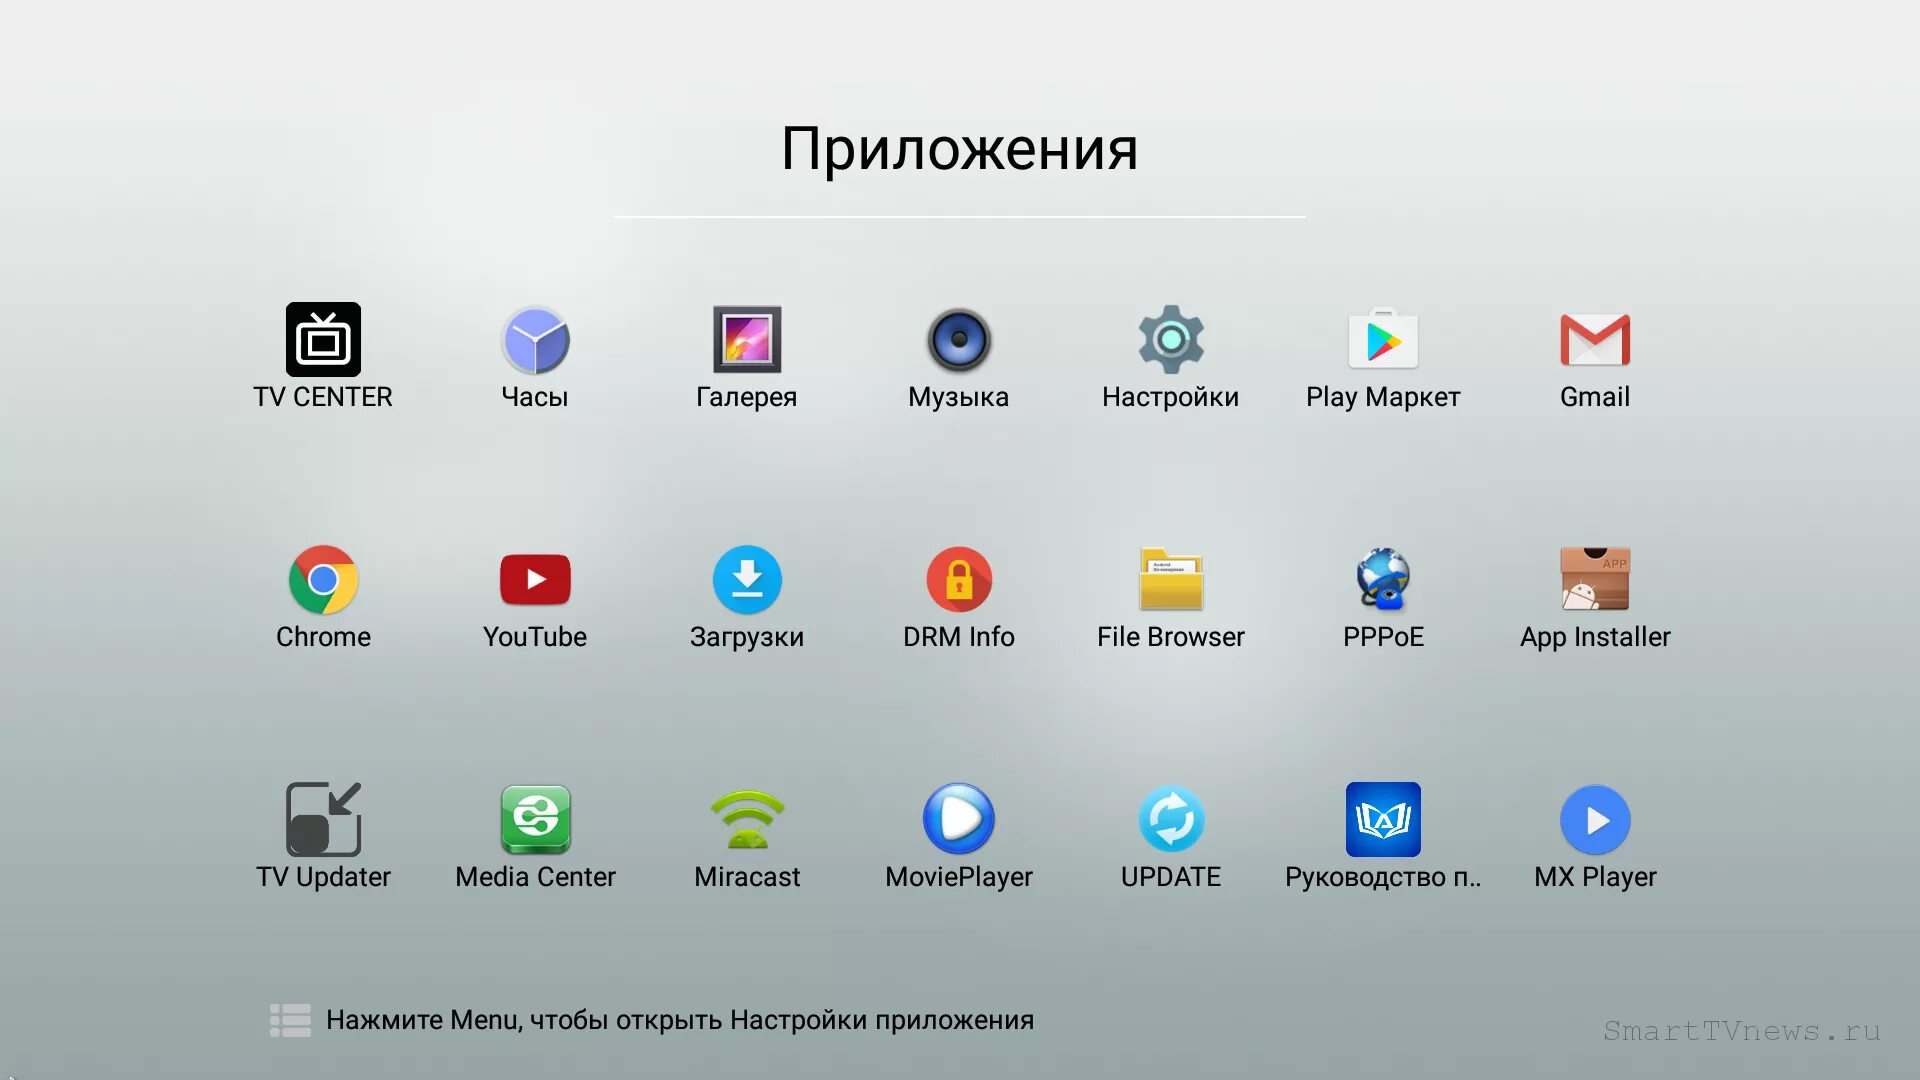 Приложения для TV приставок. Программы для андроид приставки. Android TV приложения. Андроид ТВ приставка Интерфейс. Приложения для телефона для просмотра тв